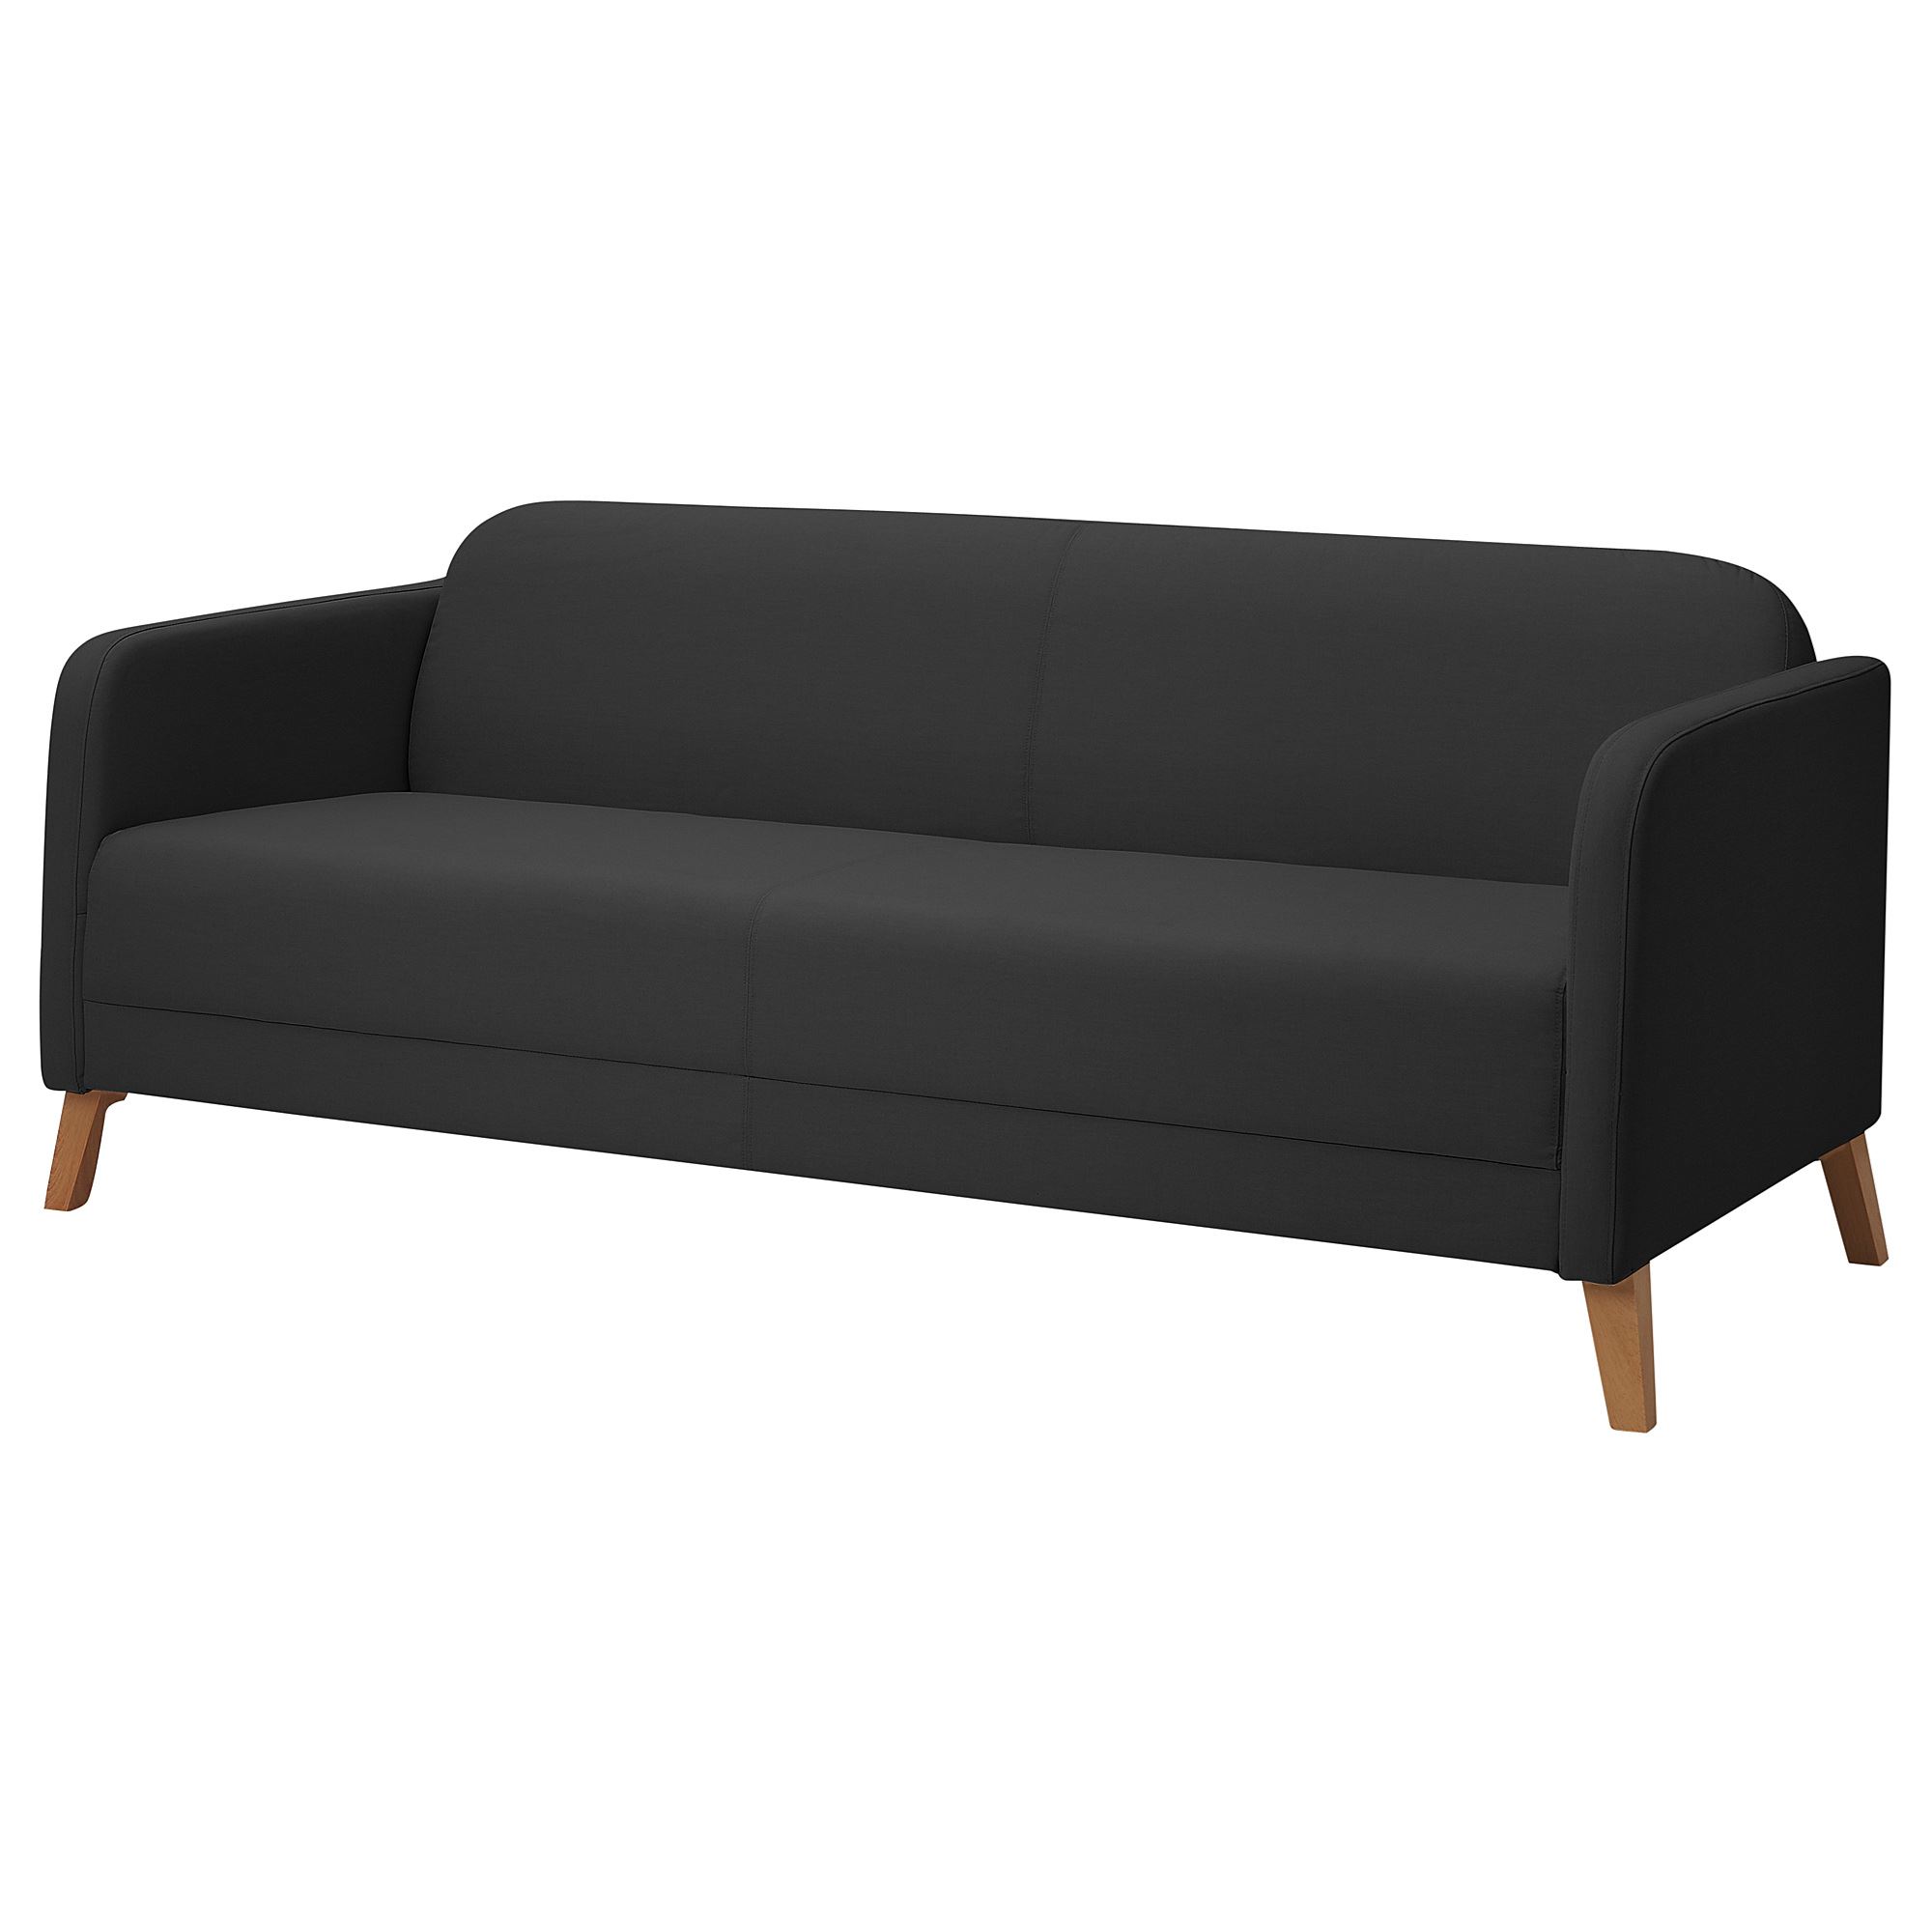 LINANAS vissle koyu gri 3'lü kanepe | IKEA